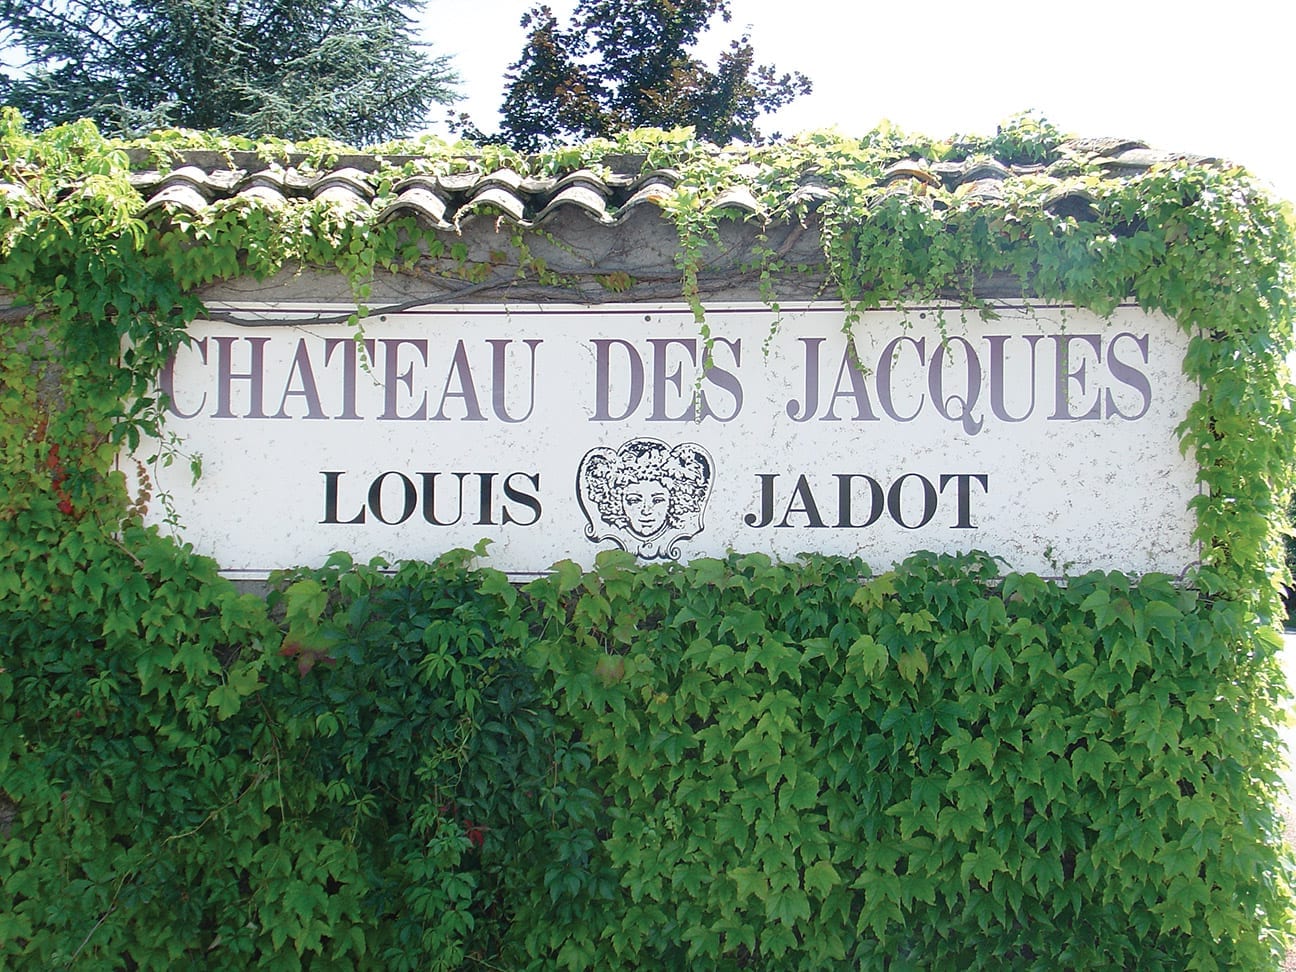 Chateau Des Jacques, Jadot